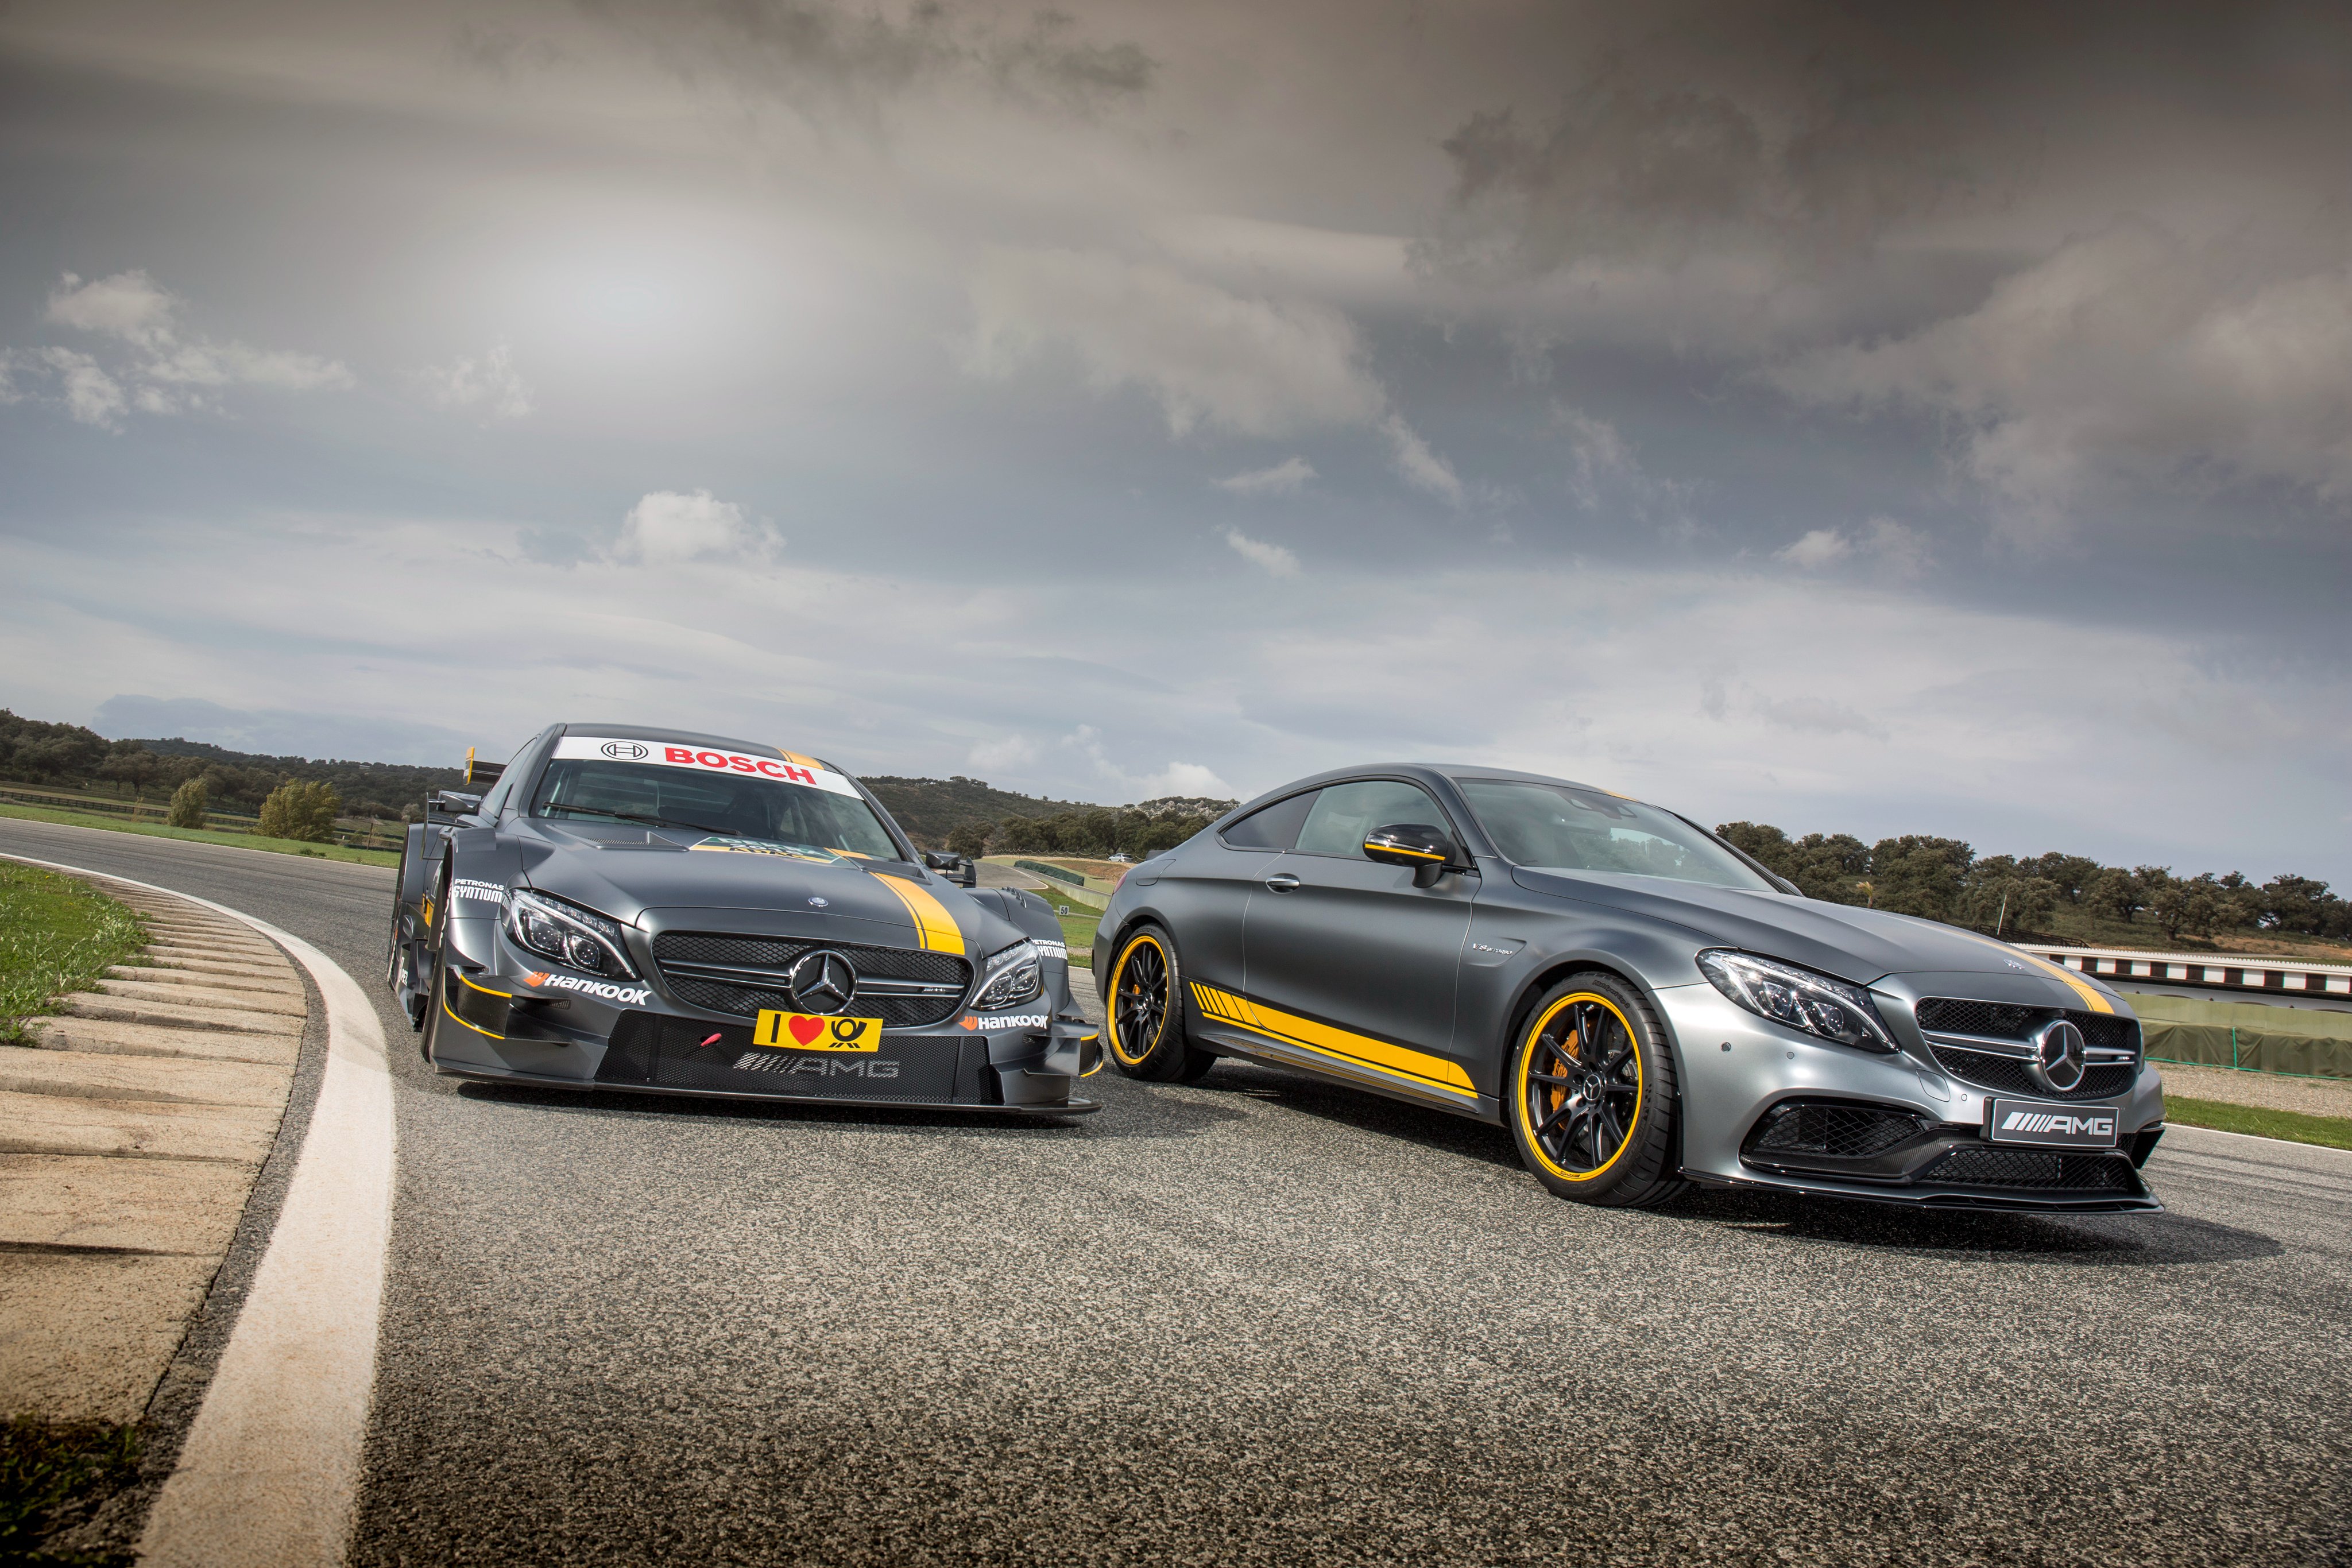 2014, Amg, Mercedes, Benz, C klasse, 205, Race, Racing Wallpaper